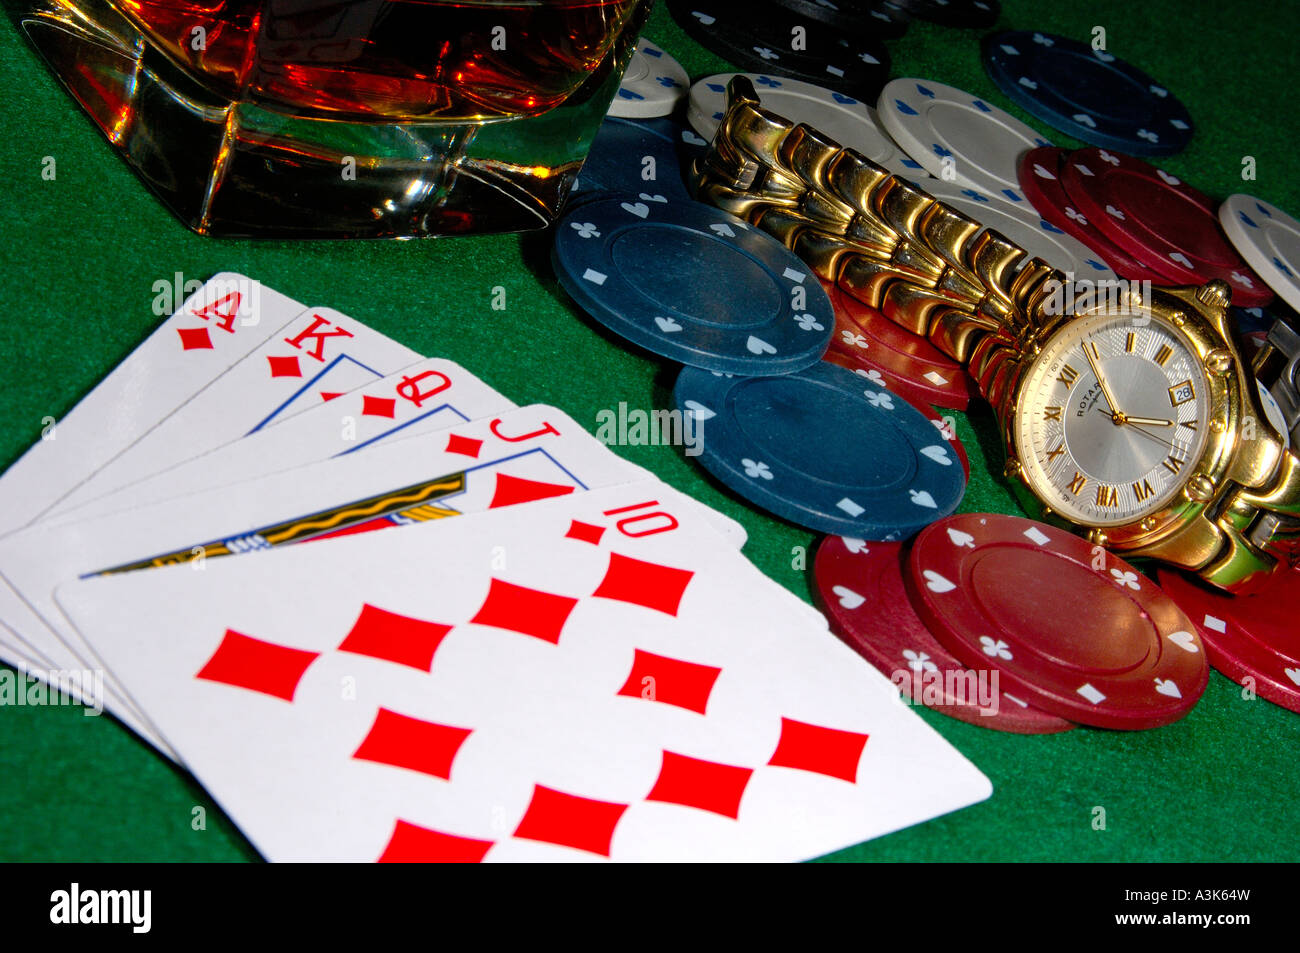 Las cartas de póquer mostrando un royal flush con fichas de casino un reloj tirado en un vaso de whisky en las rocas, todo en un tapete verde ca Fotografía de